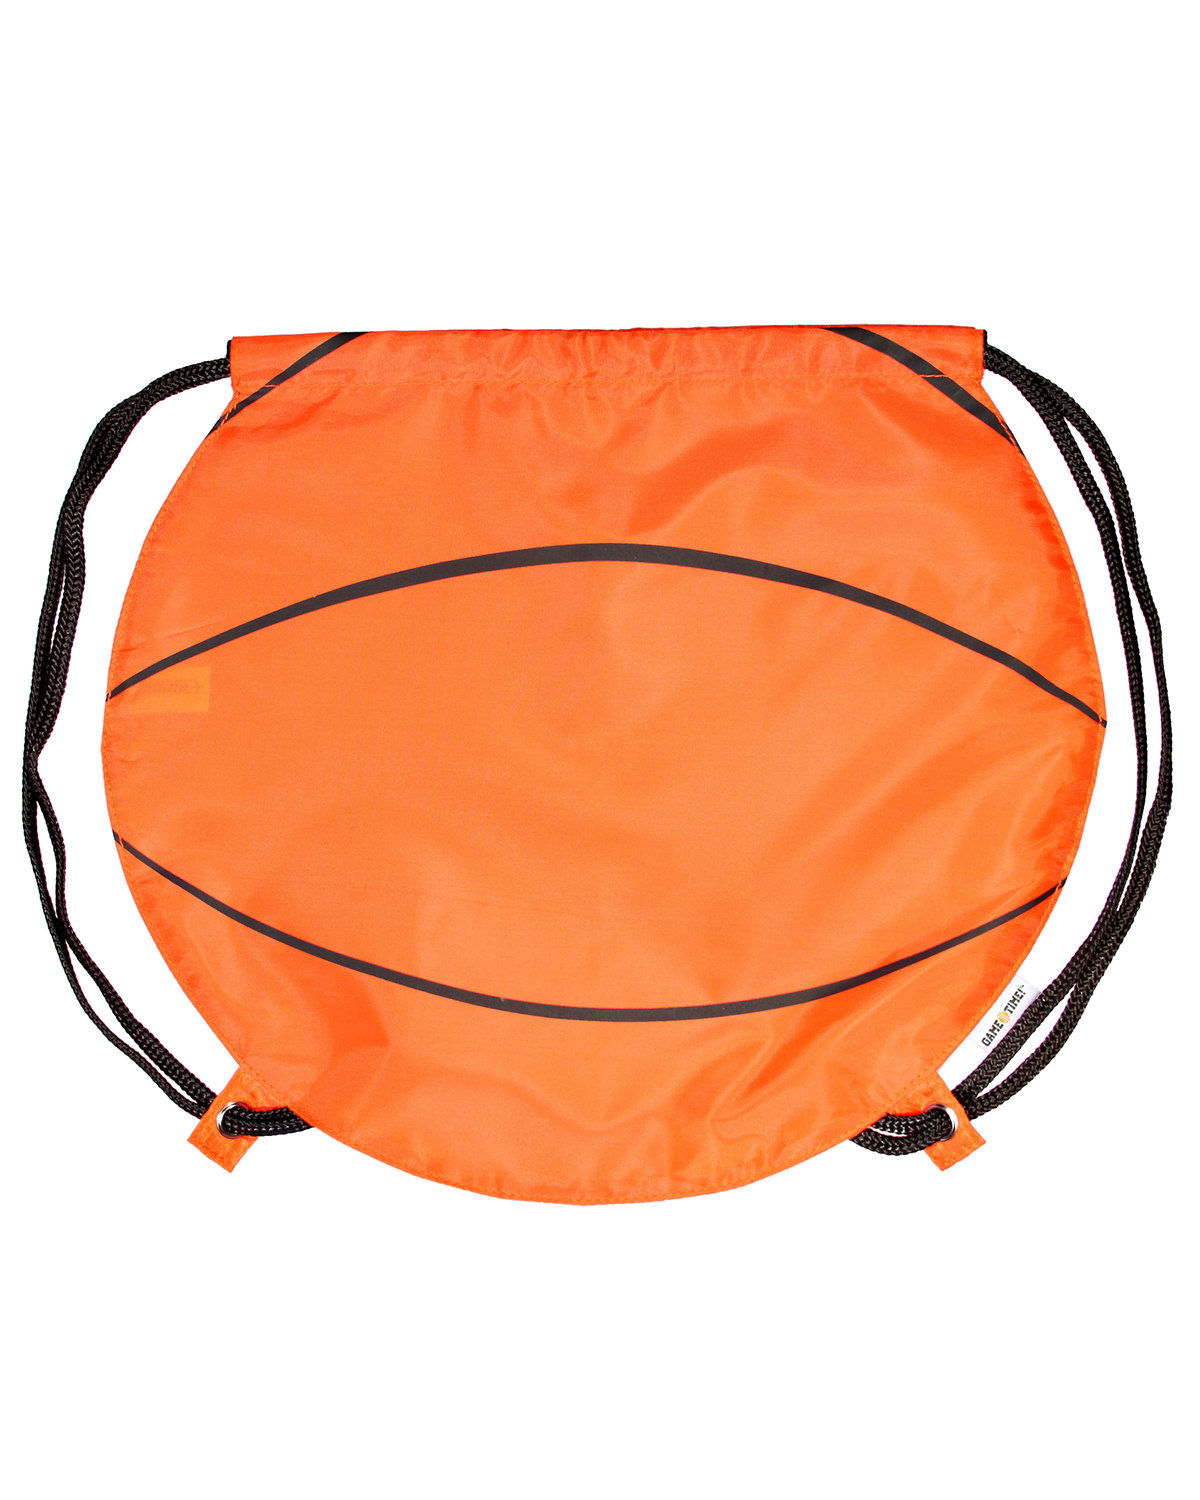 Basketball Drawstring Backpack-GameTime